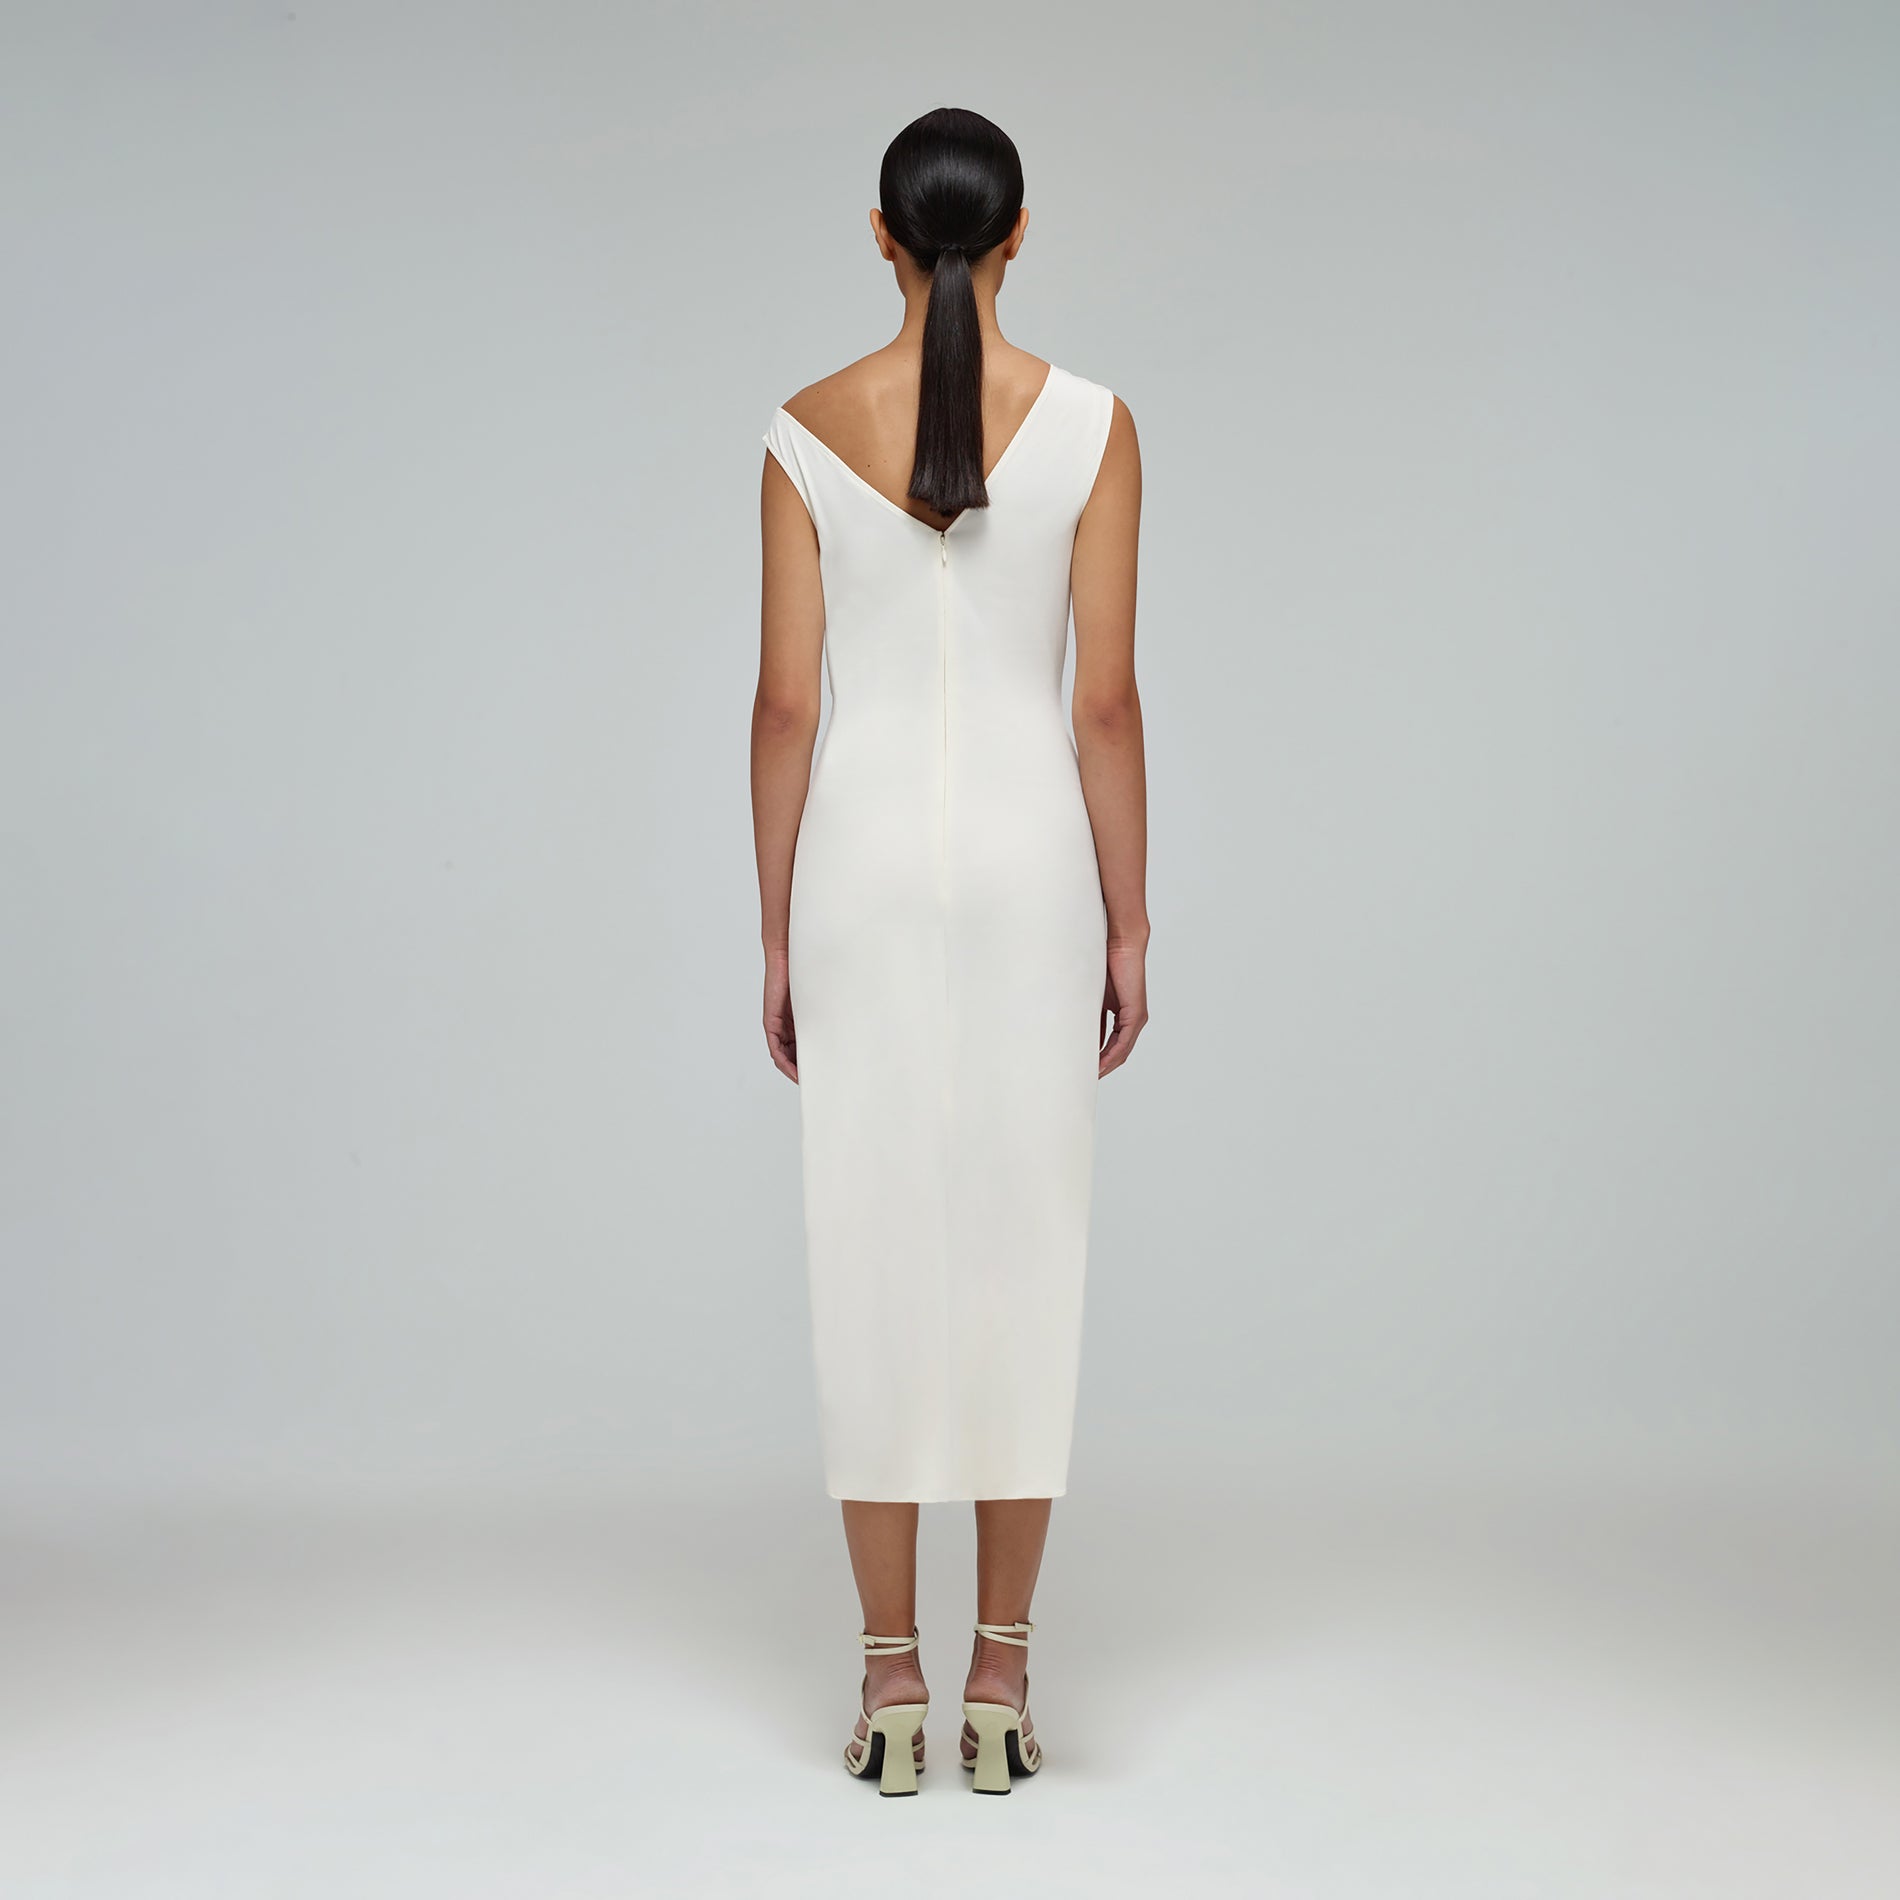 A woman wearing the Ivory Jersey Gathered Asymmetric Midi Dress